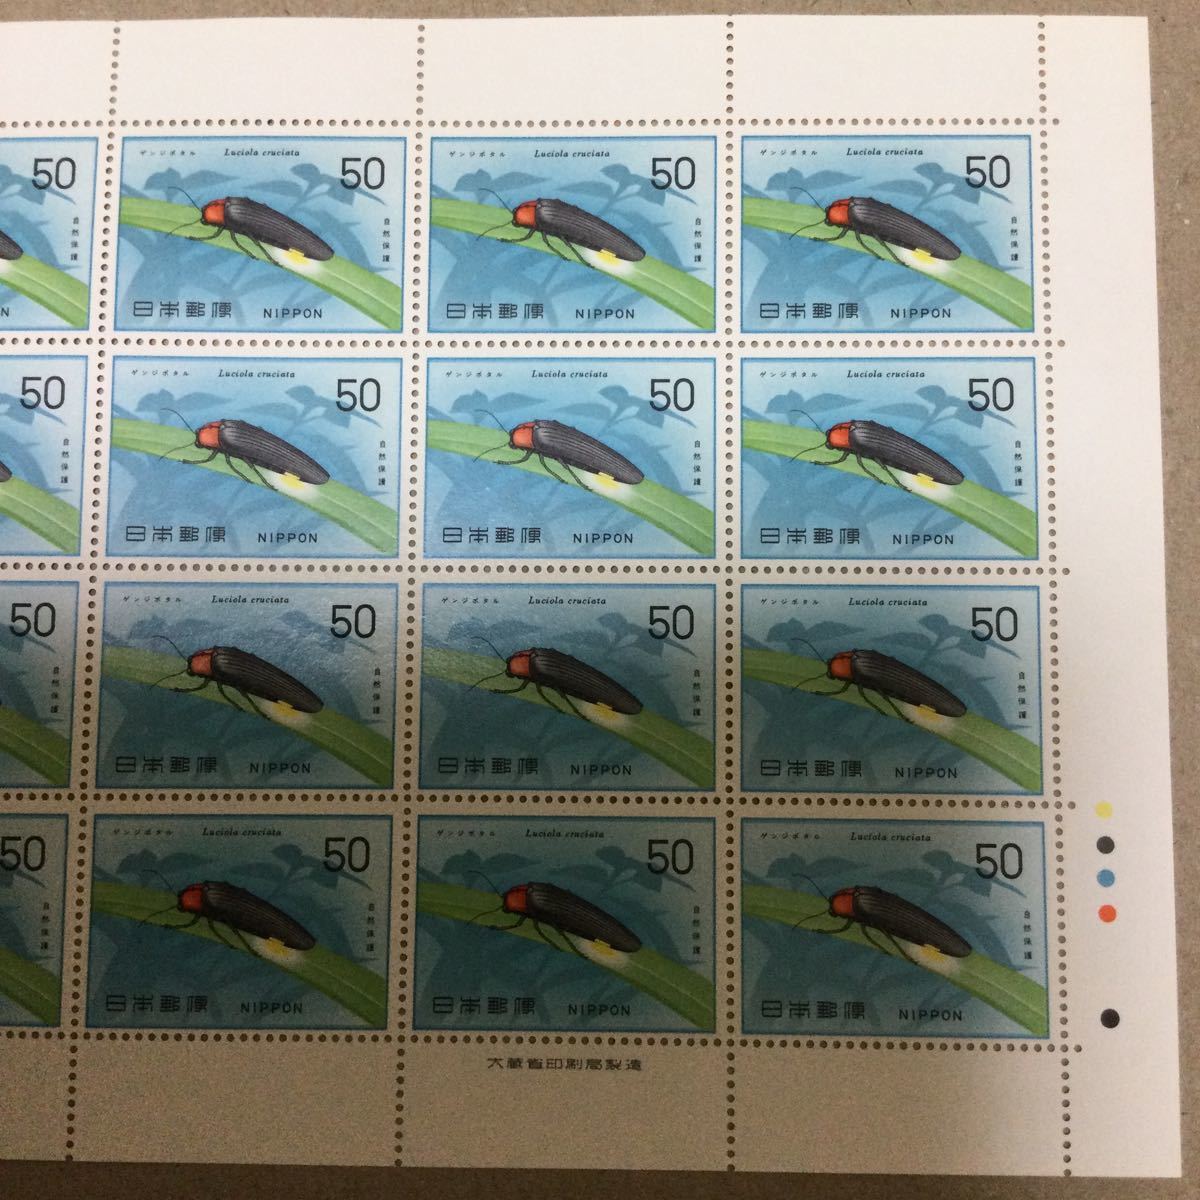 【未使用】1977年 自然保護シリーズ 昆虫類 ゲンジボタル50円×20枚 切手 大蔵省印刷局製造 余白 記念切手の画像3